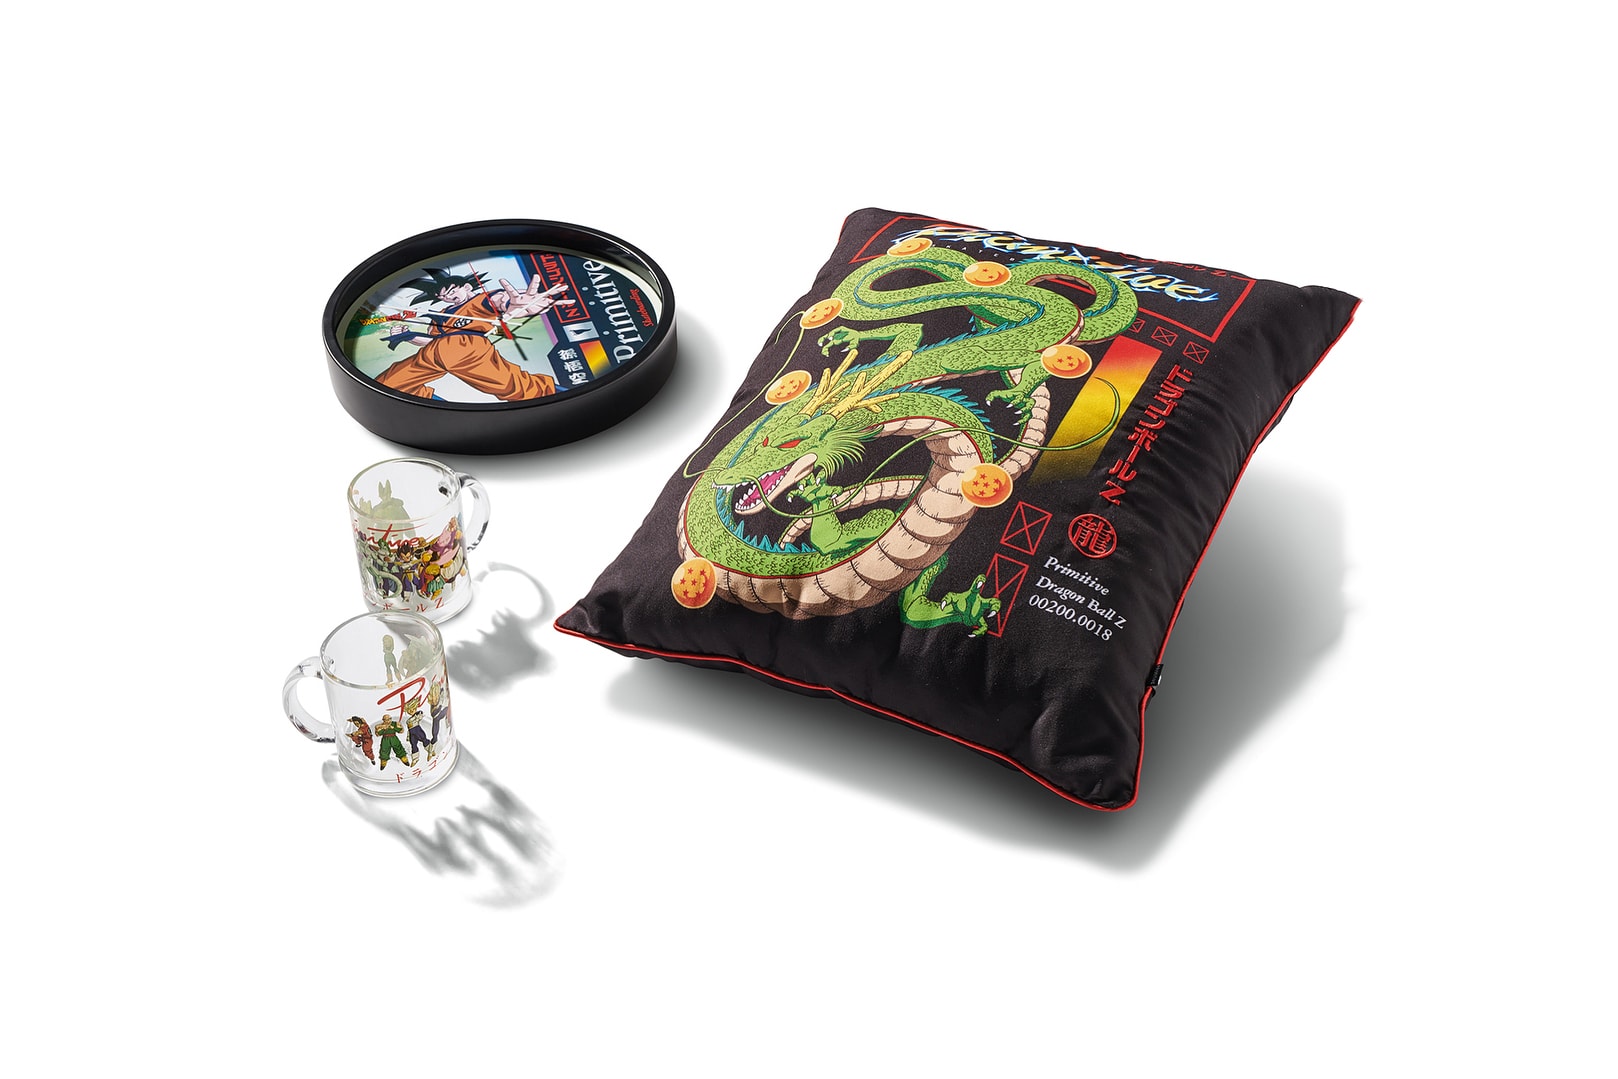 Primitive Skateboarding Dragon Ball Z Collection Official Merch merchandise collection collab Shenron